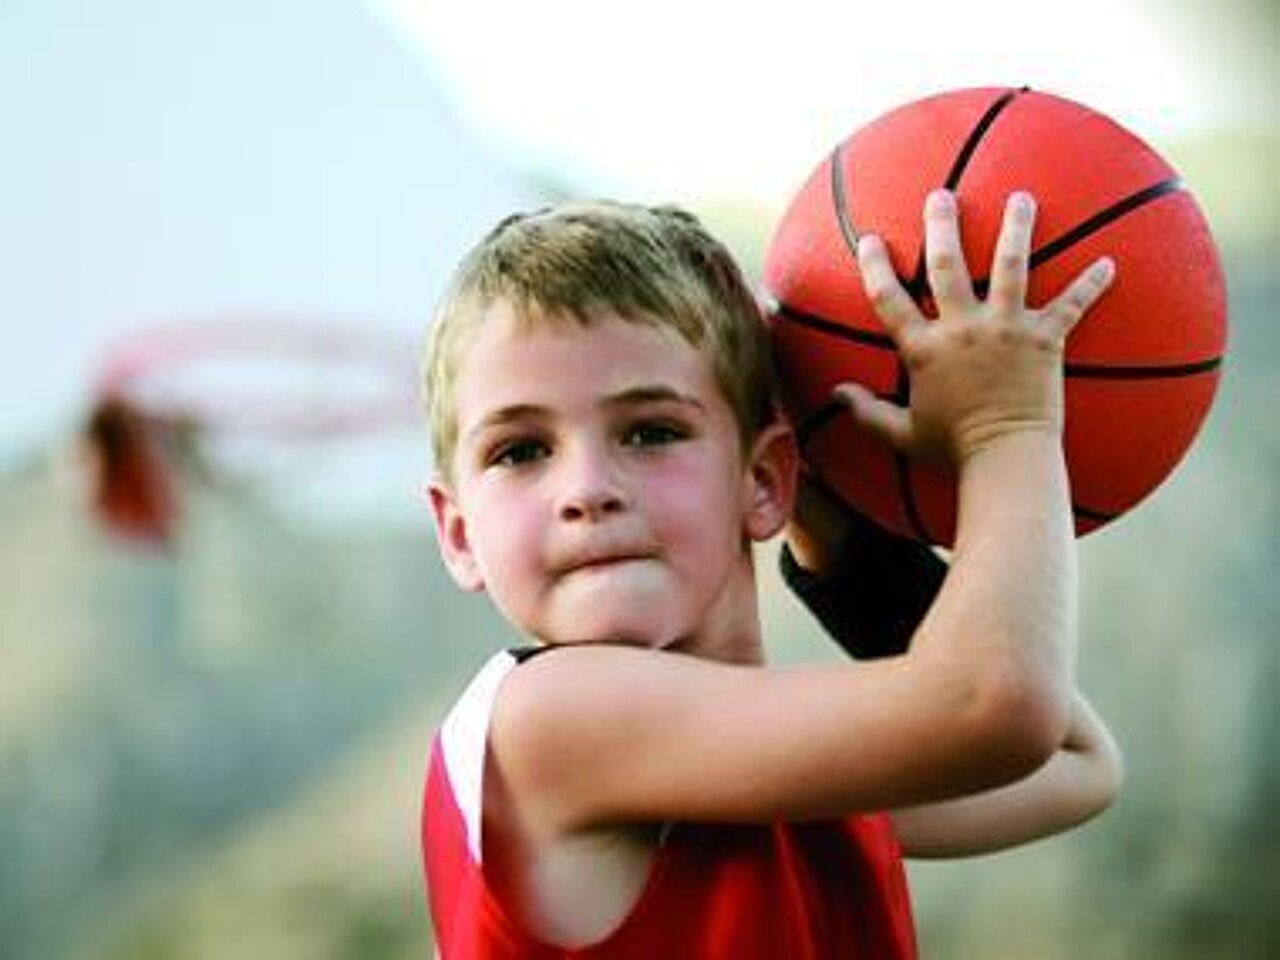 Ein Junge hat einen Basketball in den Händen und täuscht an, diesen zu werfen